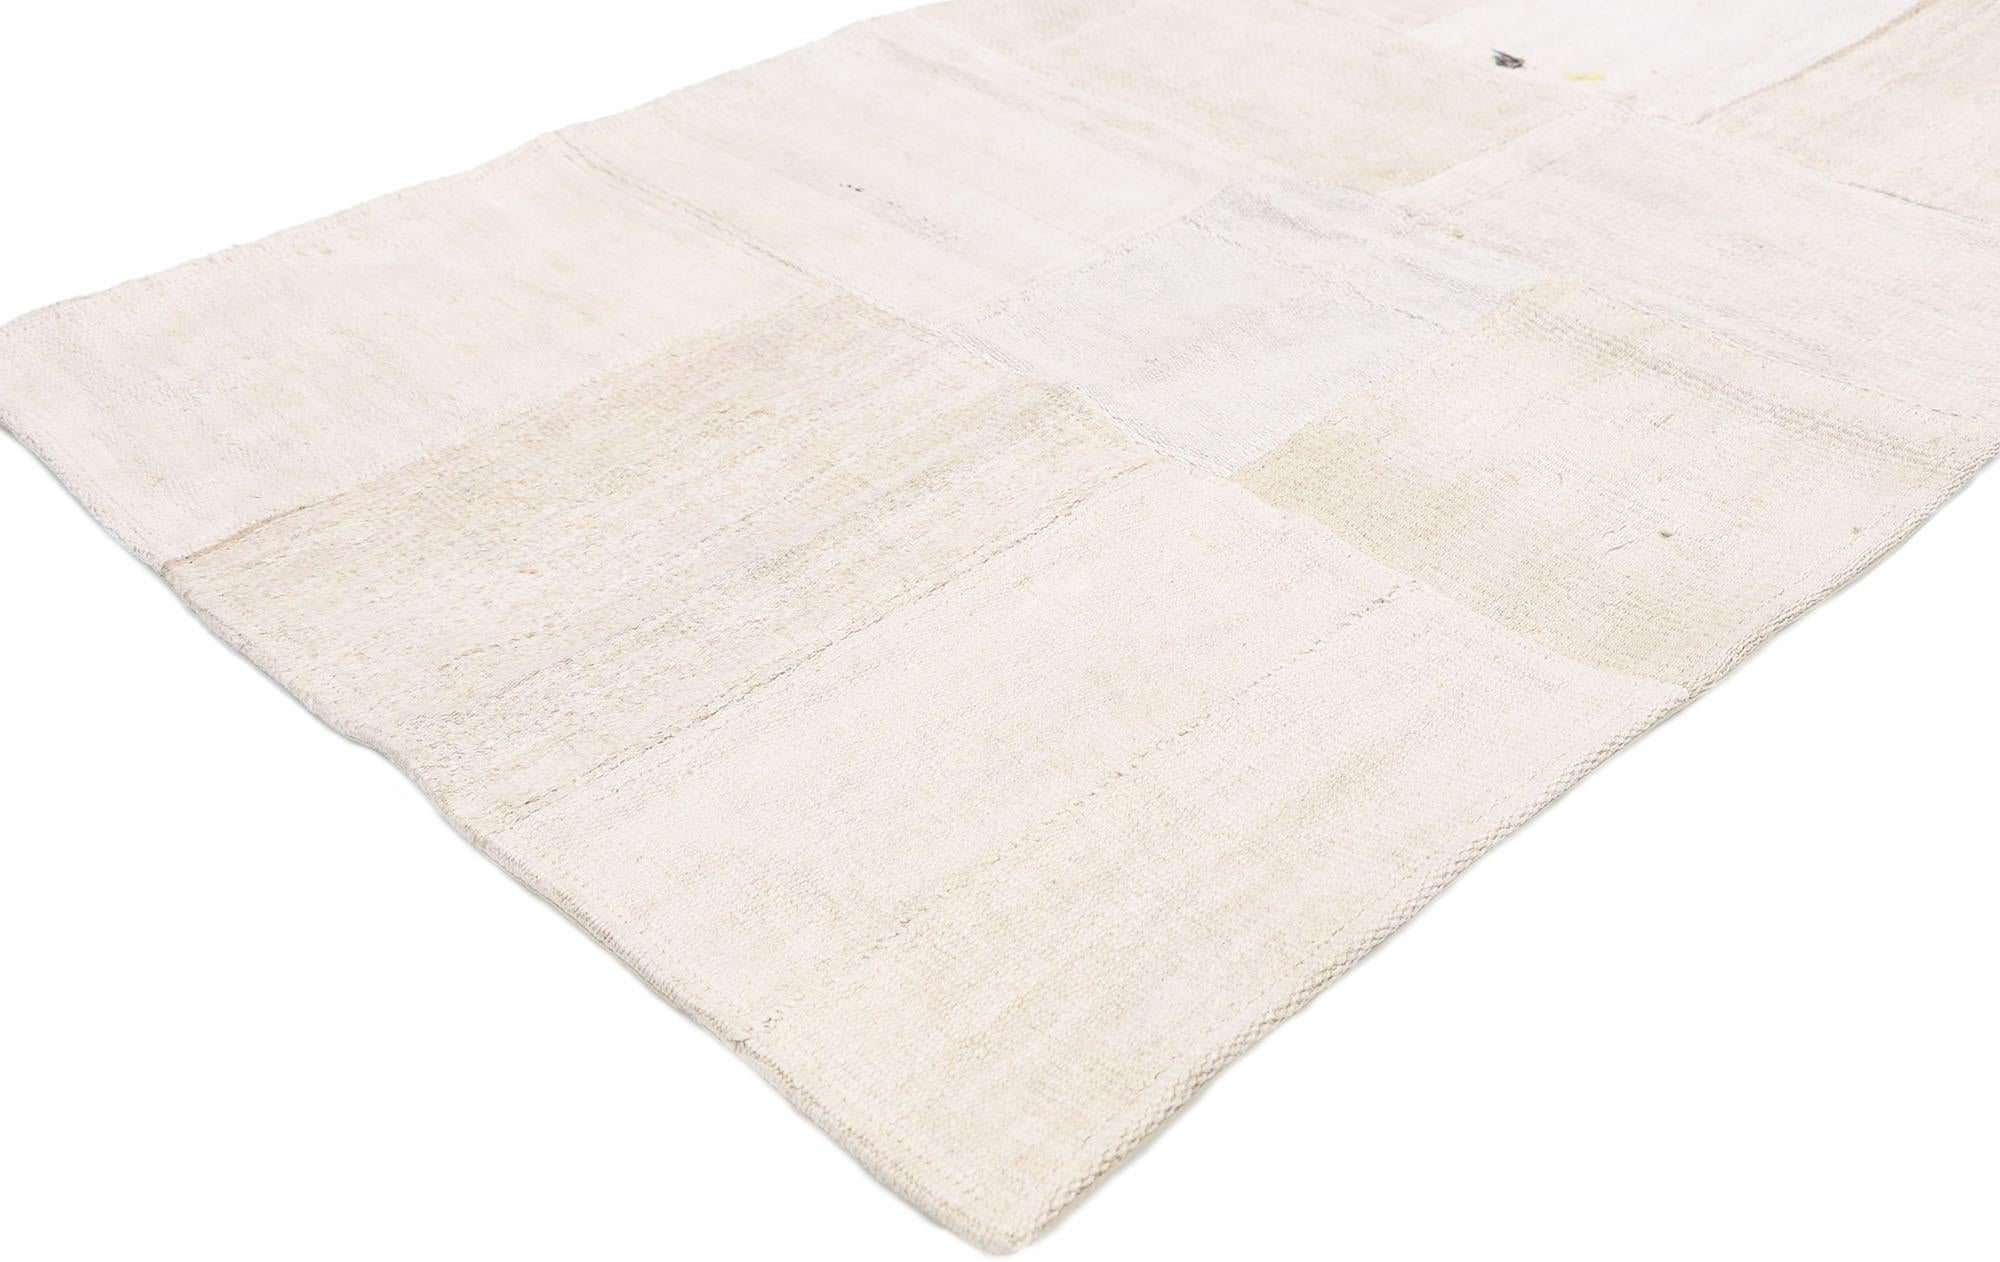 53531 Türkischer Patchwork-Kilim-Teppich im skandinavisch-modernen Stil. Dieser handgewebte türkische Patchwork-Kilim mit ausgewogener Asymmetrie und schlichter Designästhetik verleiht einem warmen, entspannten Raum Textur und einen subtilen